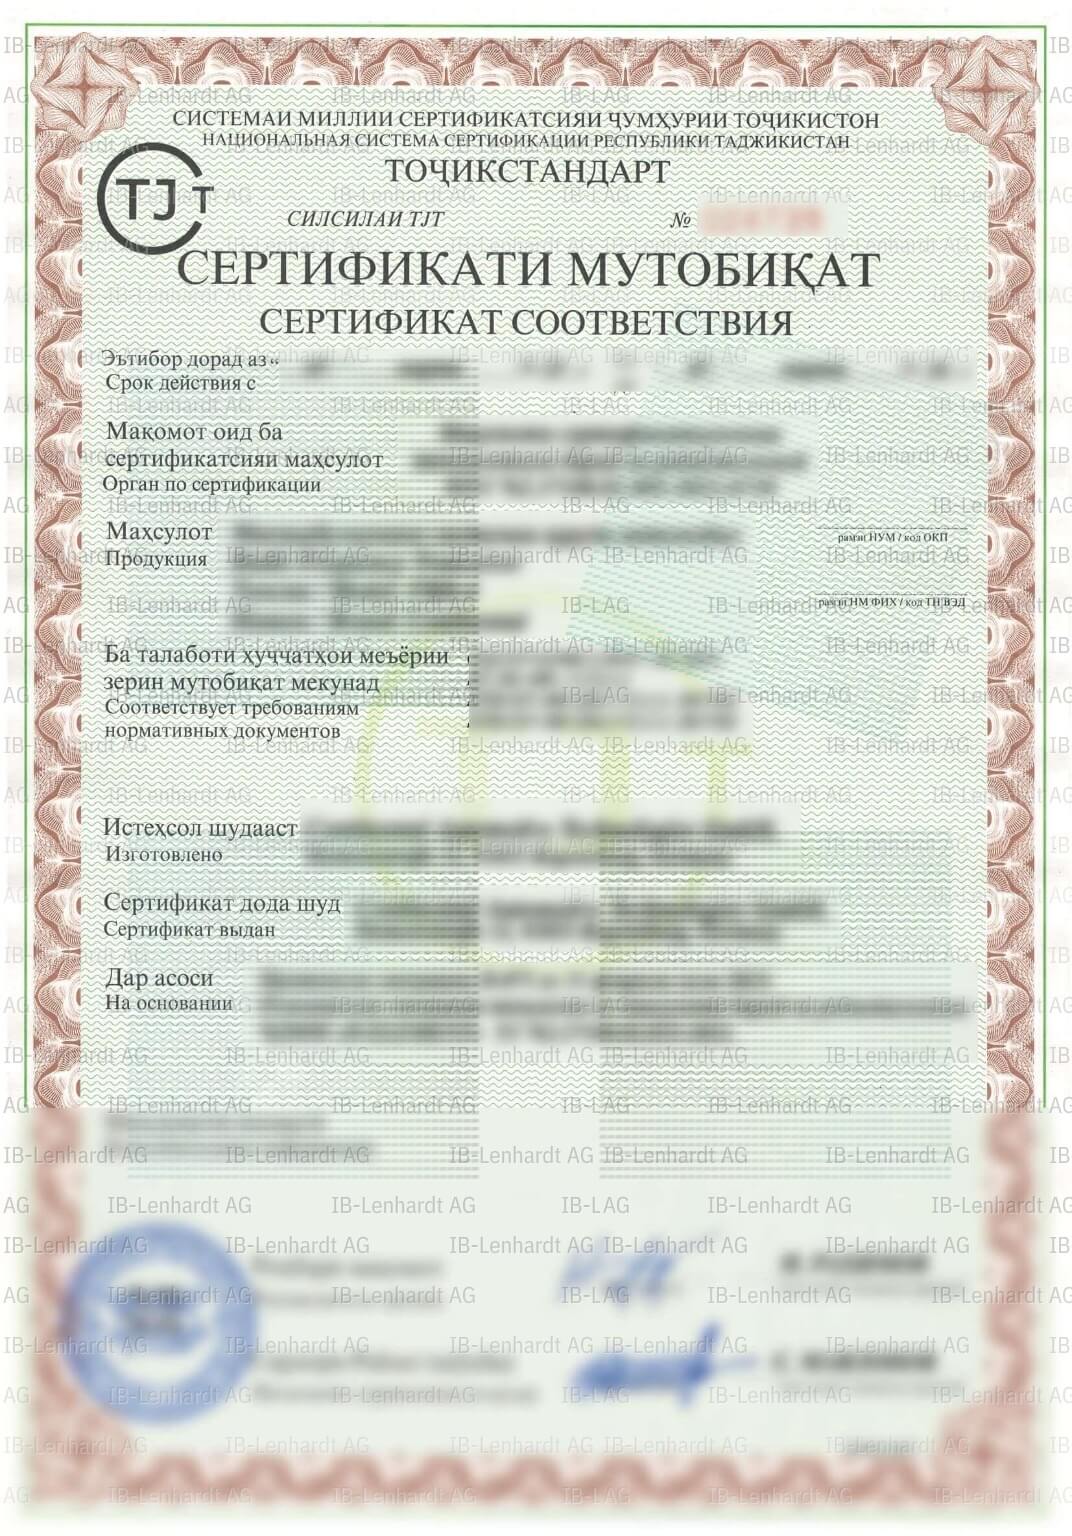 認証書の例 タジキスタン